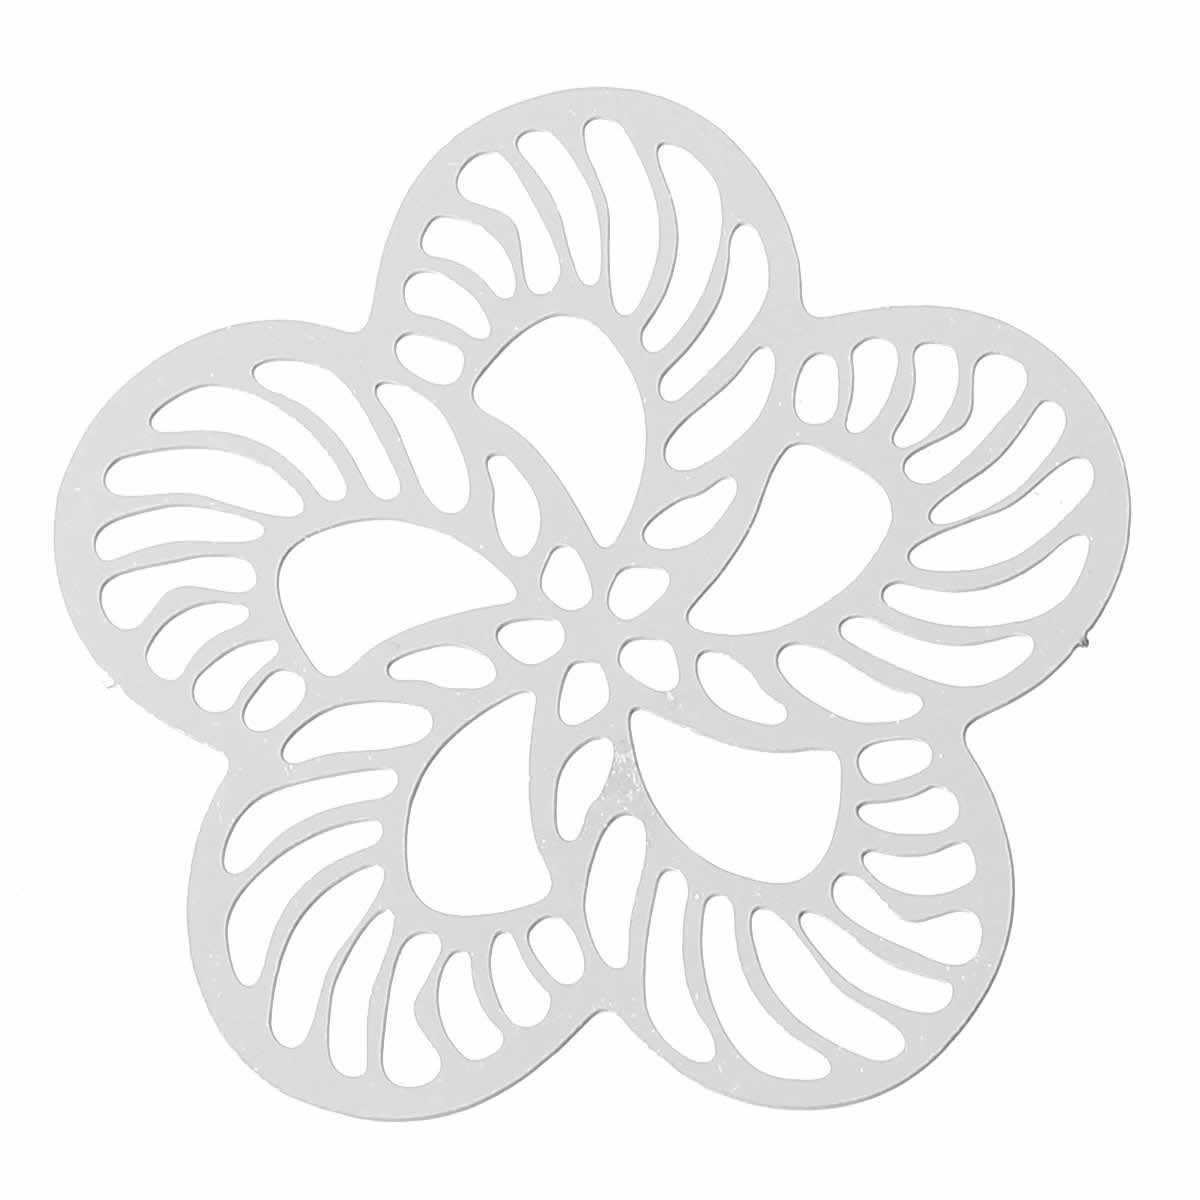 ピアス専門店グリーンピアッシング桜の花ステンレス製アクセサリーパーツ